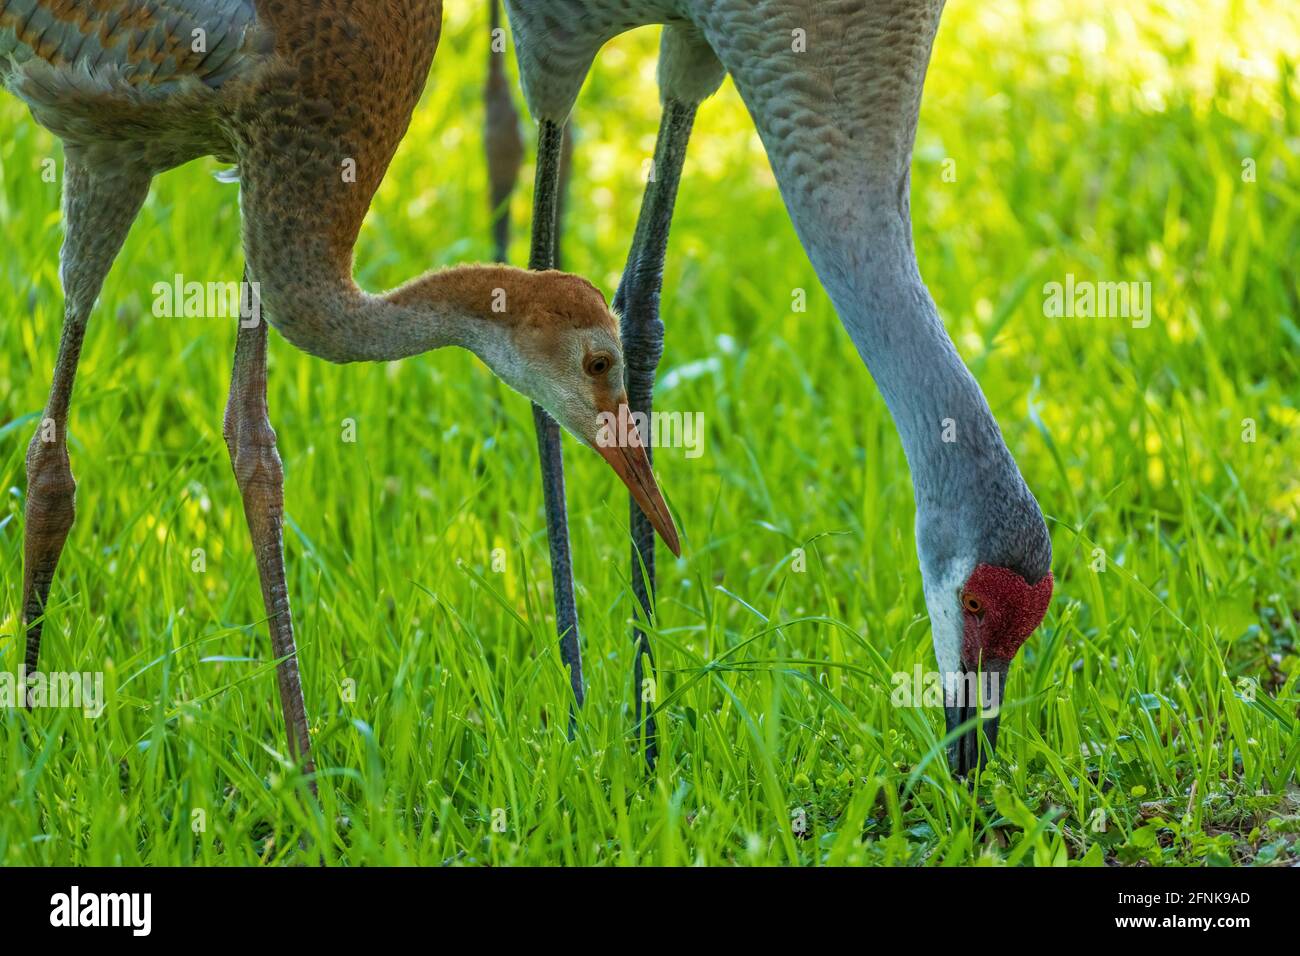 Ein jugendlicher und Eltern-Sandhügelkran (Antigone canadensis), der im Gras auf Nahrungssuche ist - Cooter Pond Park, Inverness, Florida, USA Stockfoto